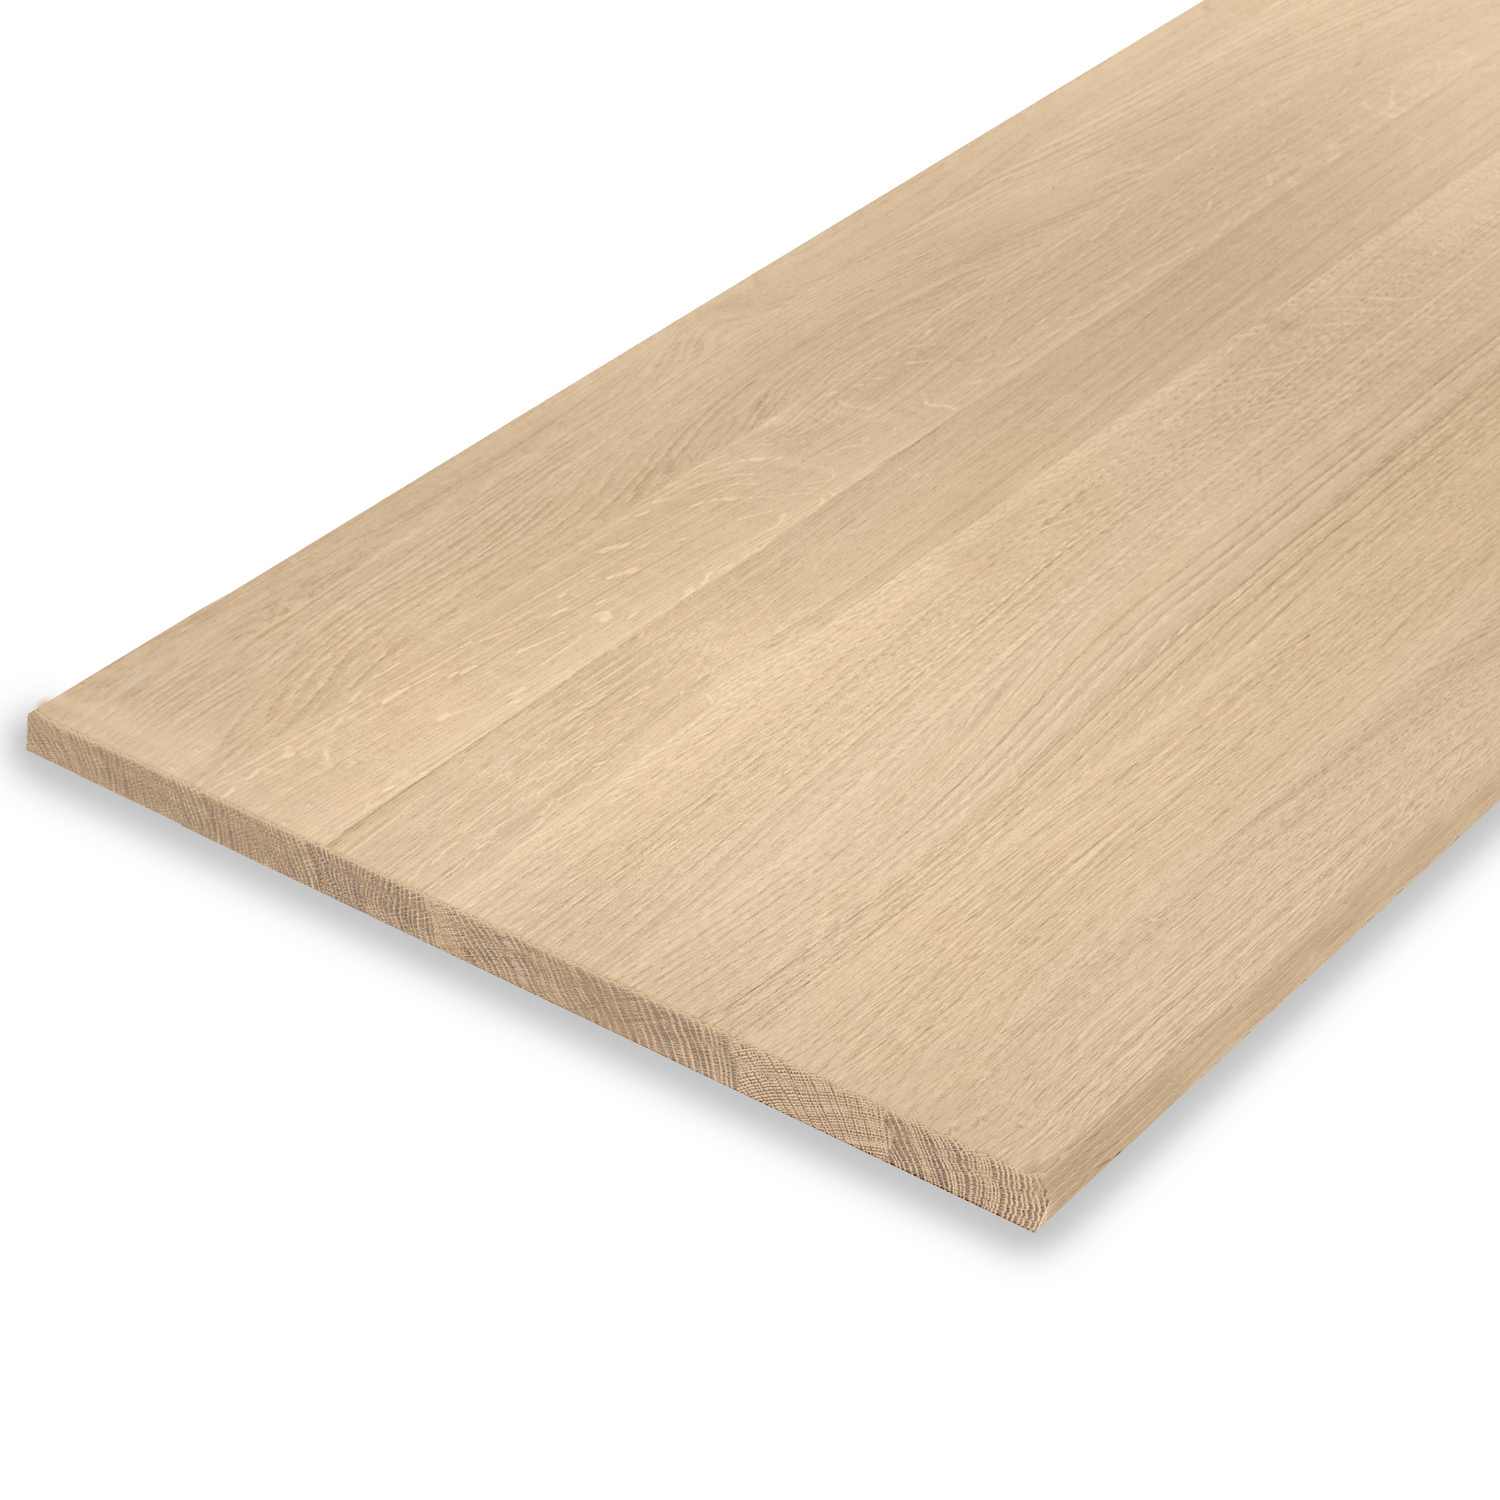  Leimholzplatte Eiche nach Maß - 2 cm dick - Eichenholz A-Qualität- Sandgestrahlt - Eiche Massivholzplatte - verleimt & künstlich getrocknet (HF 8-12%) - 15-120x20-300 cm